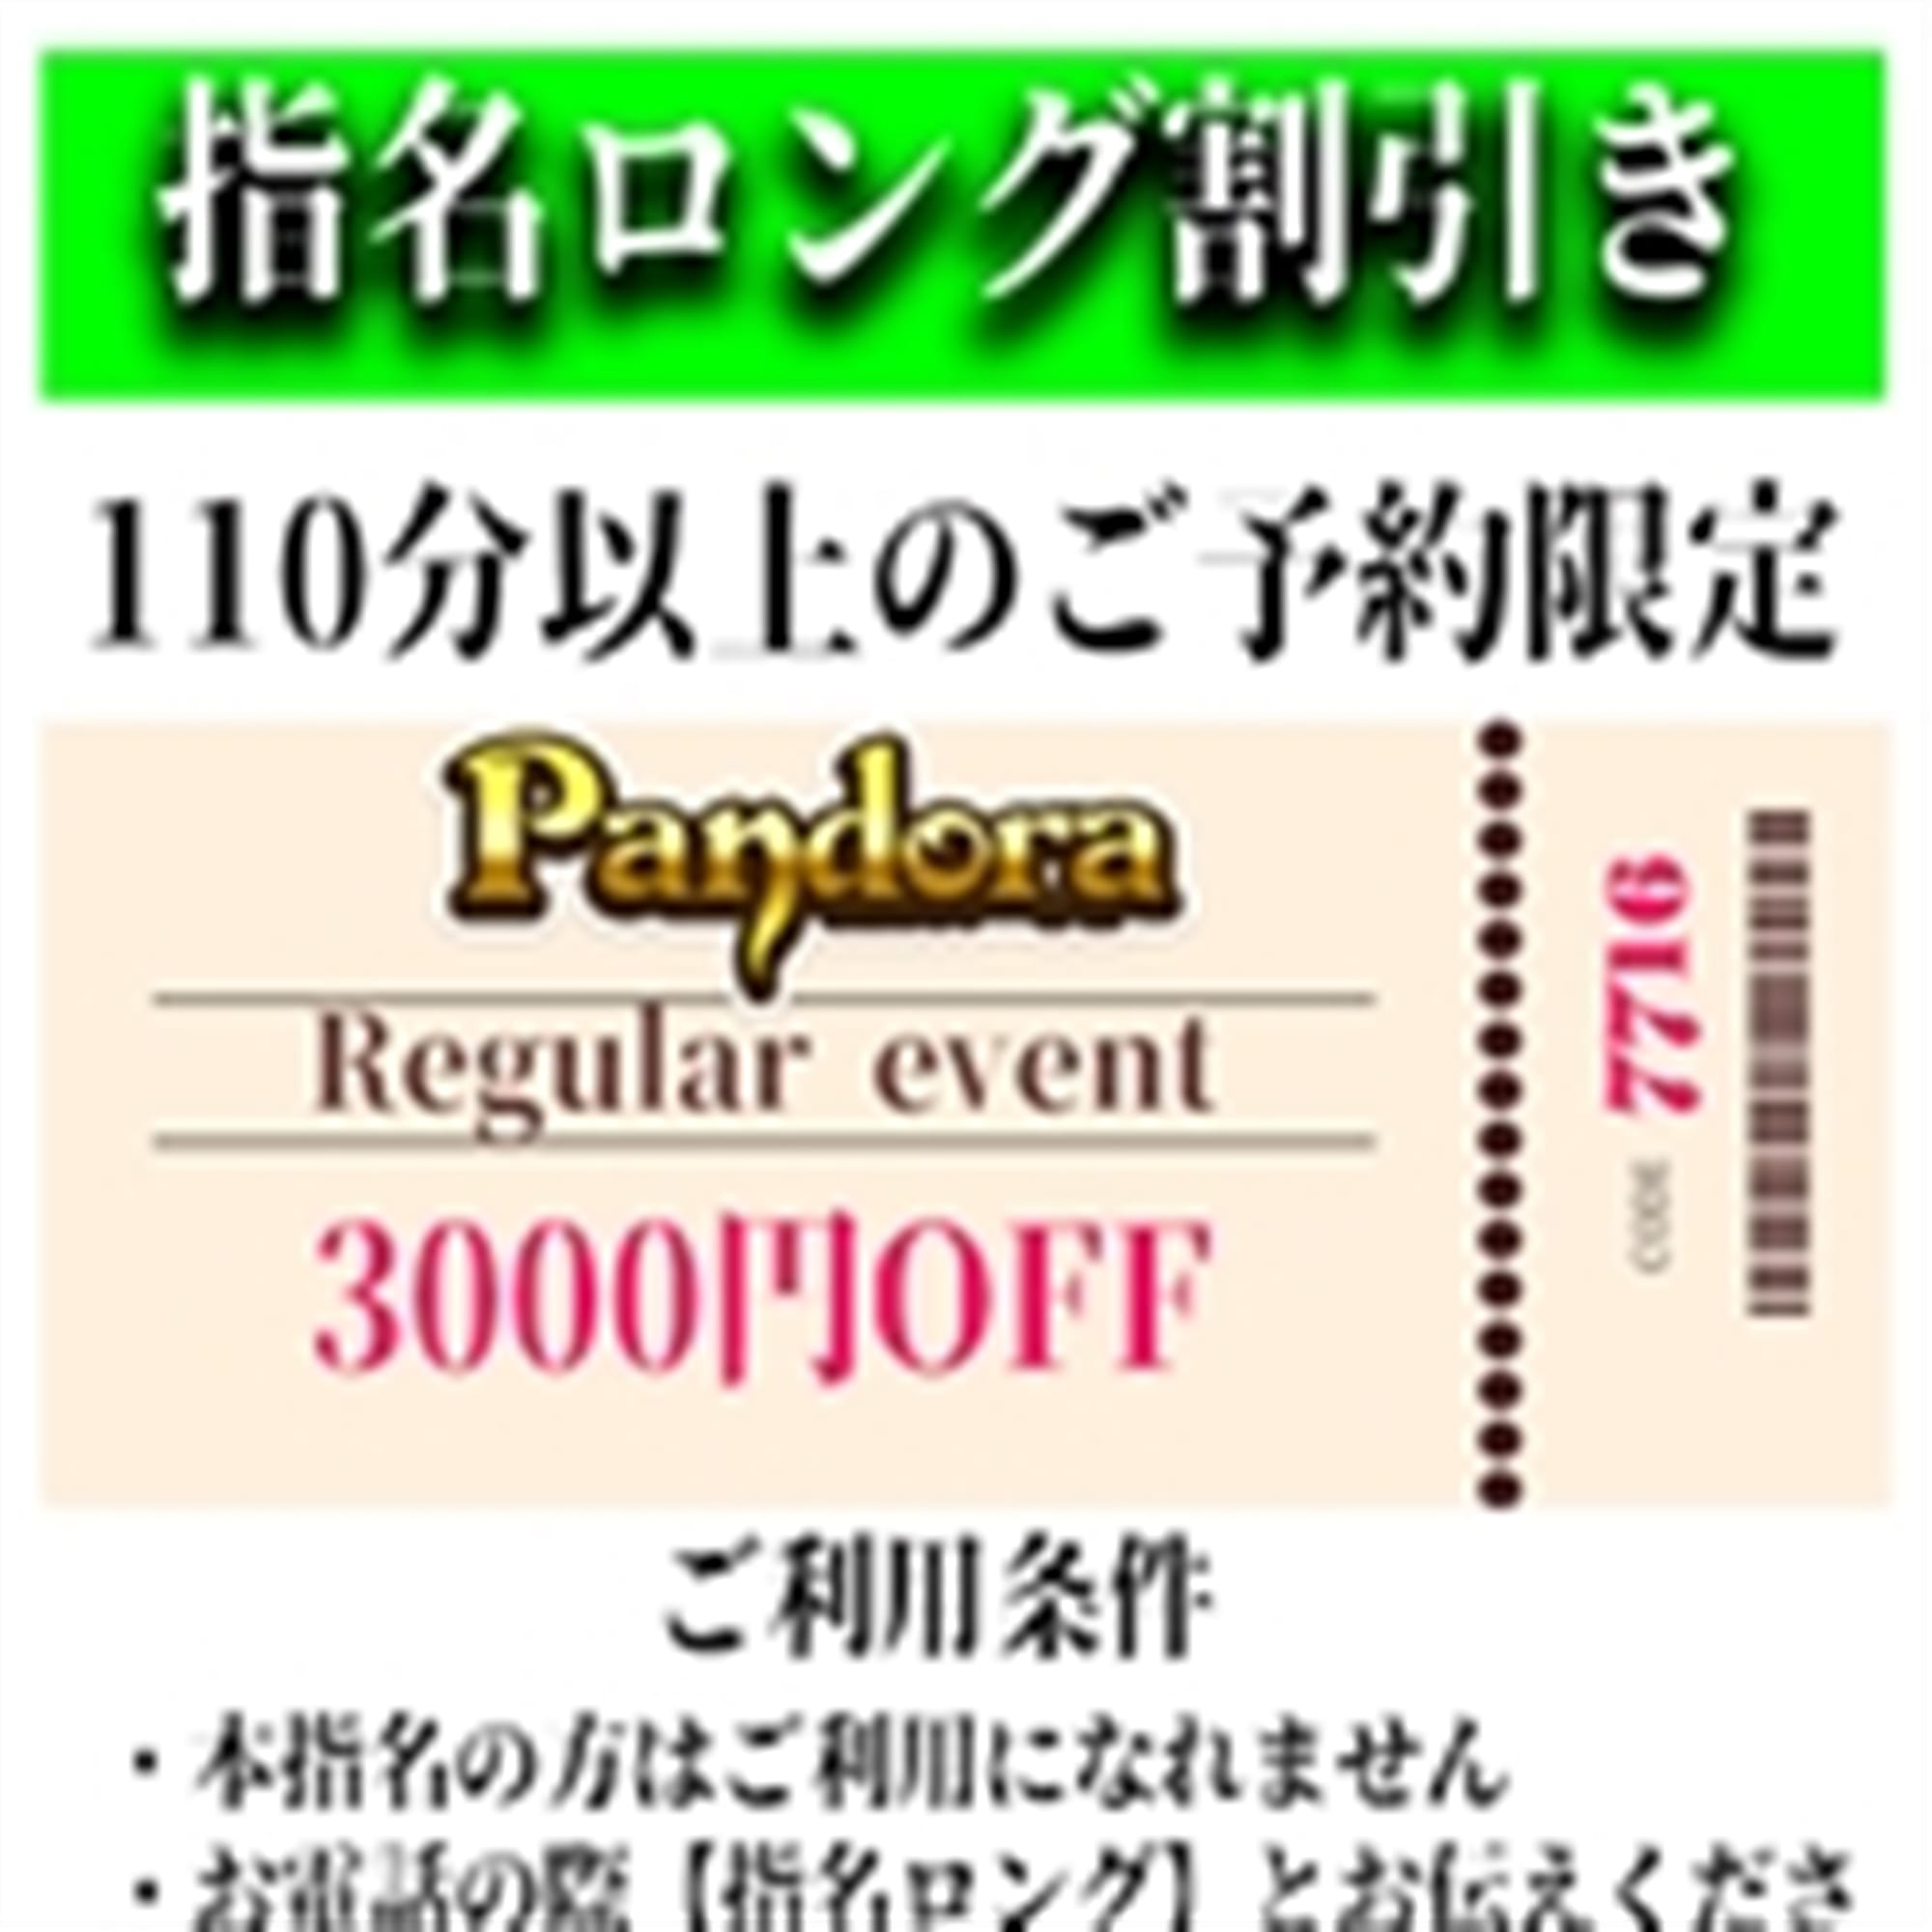 「ご指名のお客様も遊べるロングコース割引」04/17(水) 18:37 | Pandora(パンドラ)新潟のお得なニュース